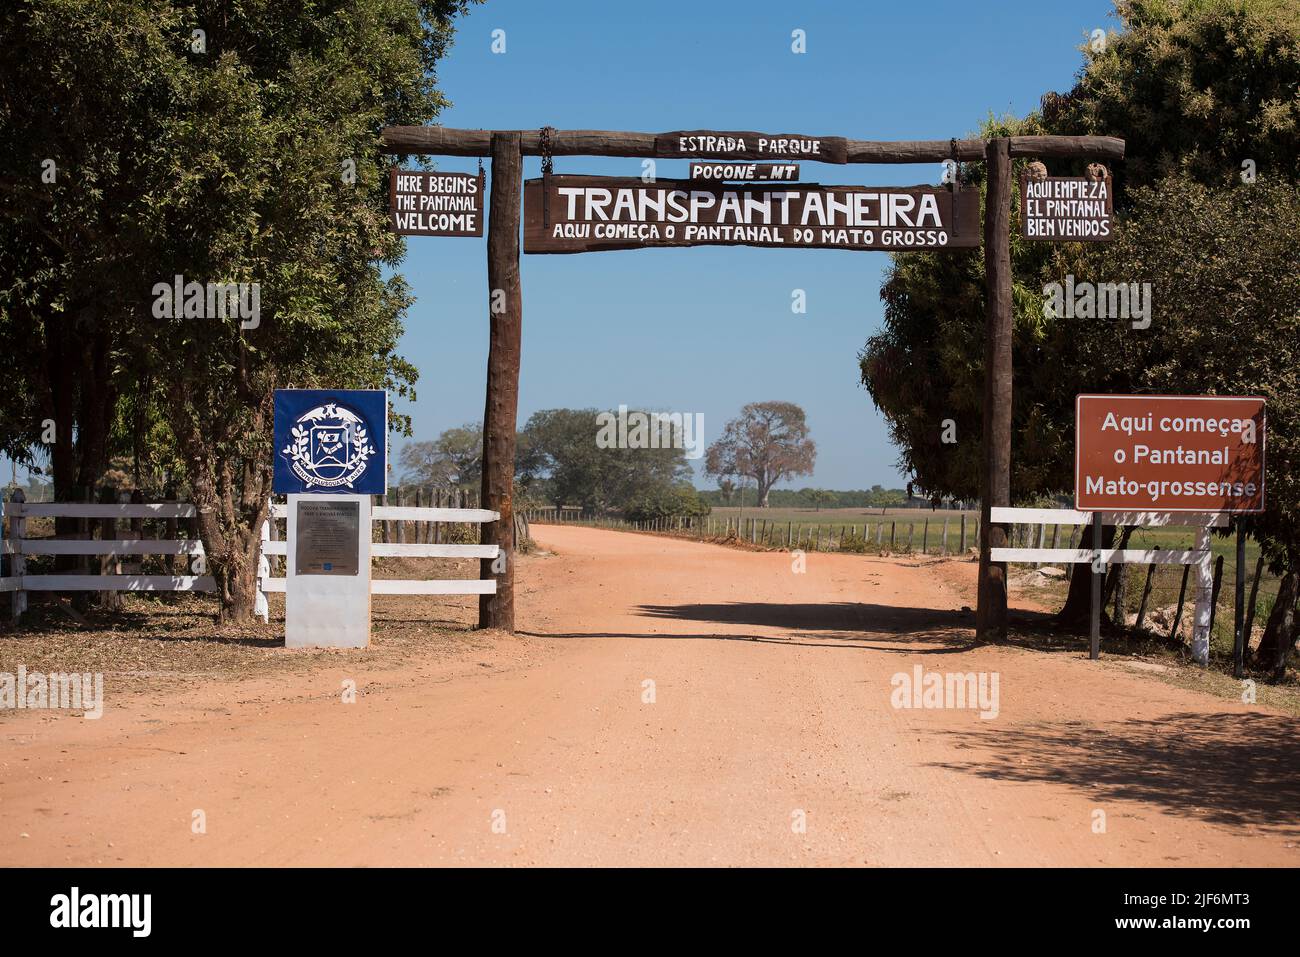 L'entrata di Transpantaneira (MT-060), la strada principale e unica per Pantanal nord, che da Poconé porta a Porto Jofre, Mato Grosso, Brasile. Foto Stock